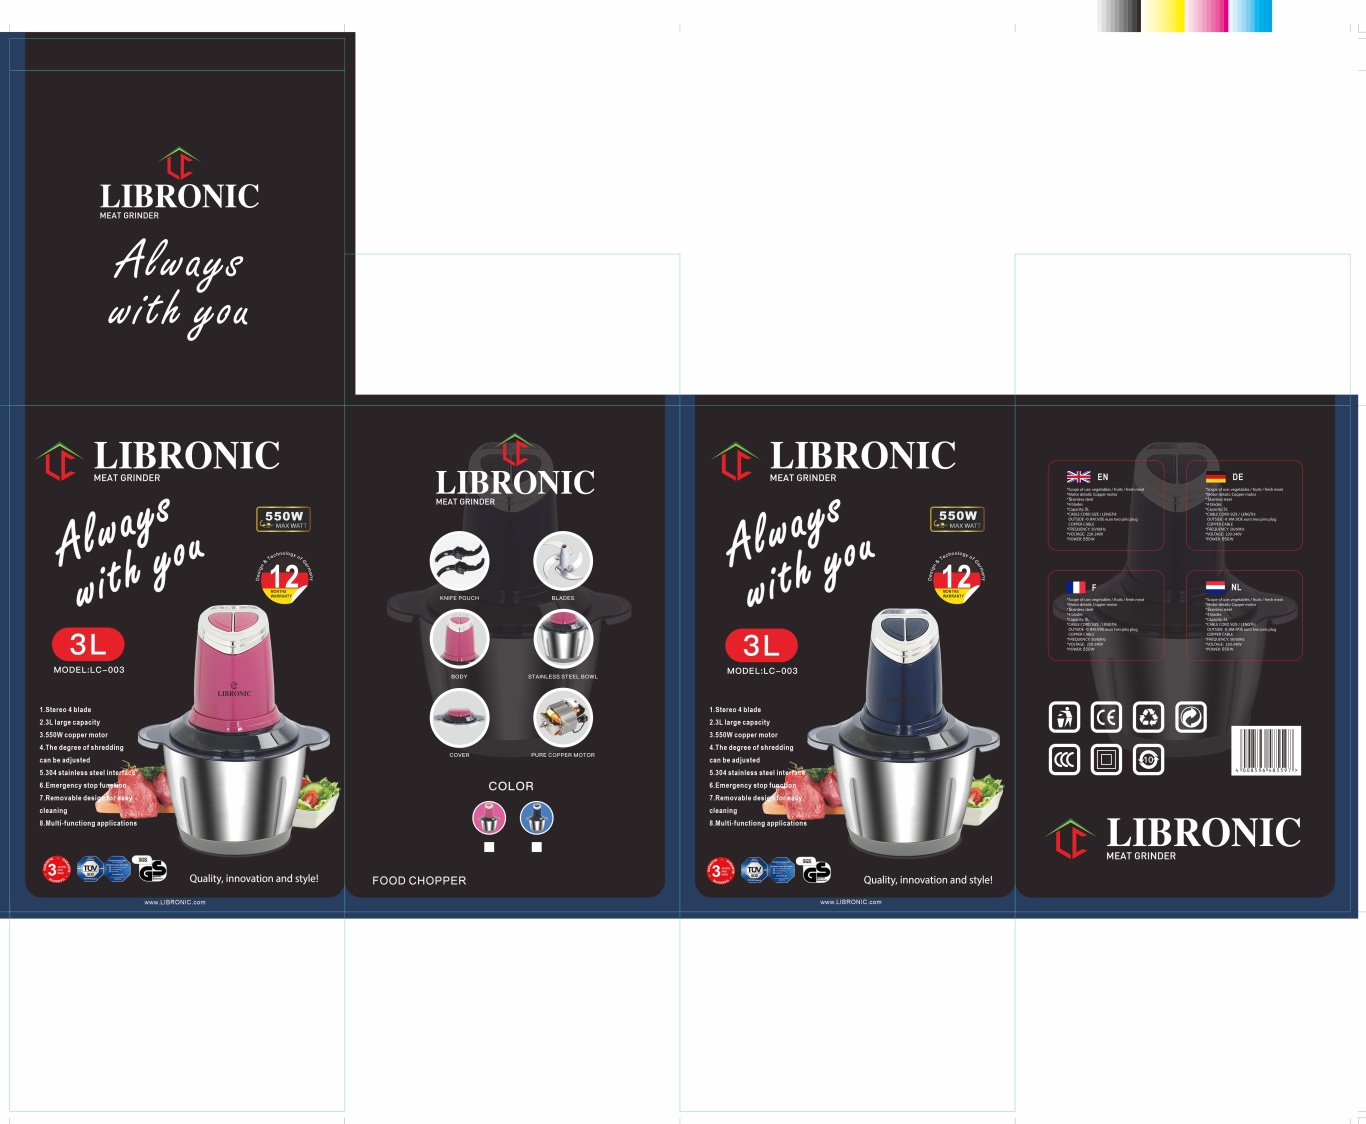 LIBRONIC品牌的绞肉机料理器黑色包装图5